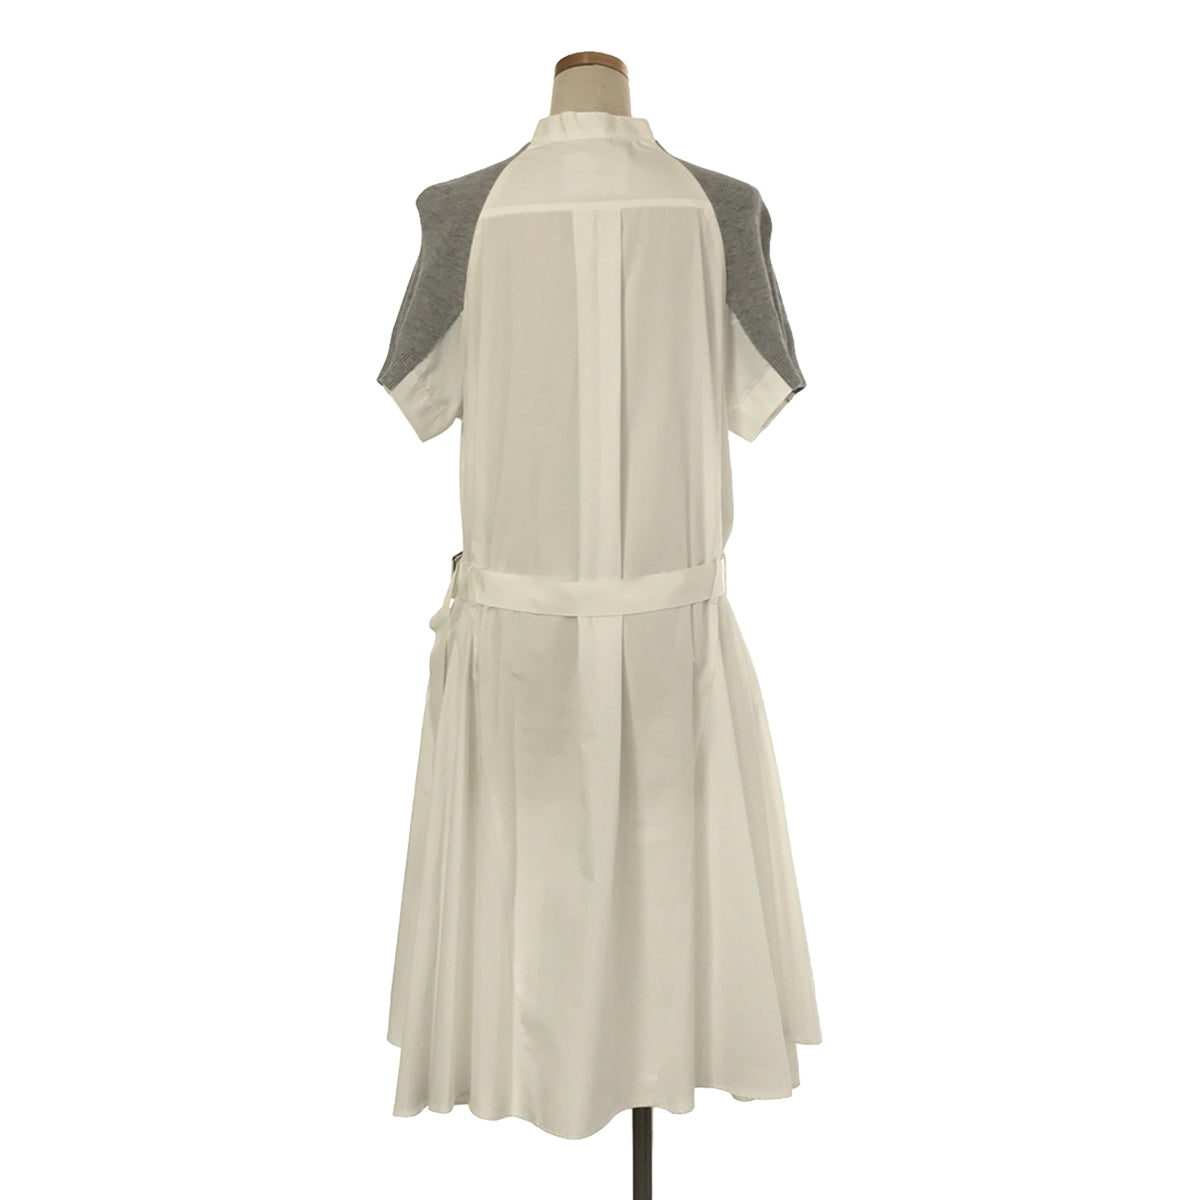 【美品】  sacai / サカイ | Cotton Knit Dress / ドッキング ニット シャツ ワンピース | 1 | ホワイト/グレー | レディース